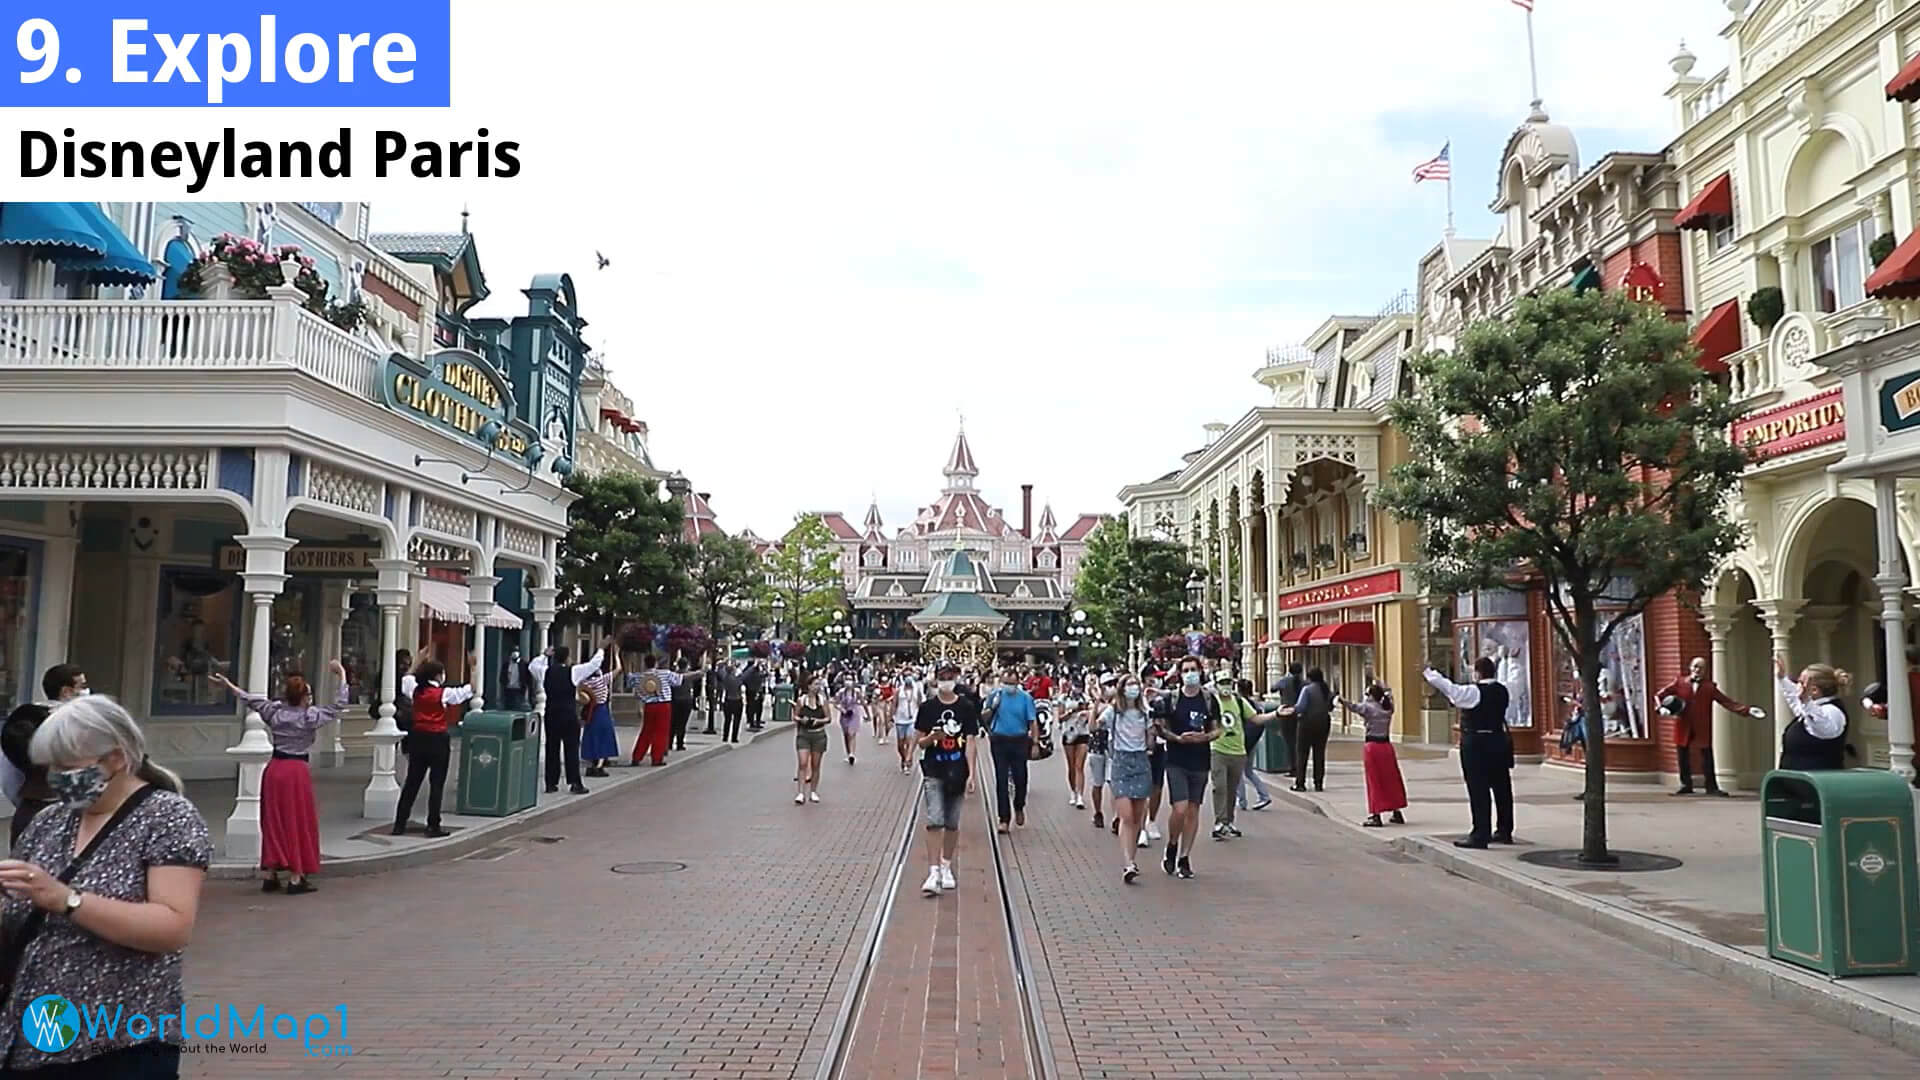 Explore Disneyland Paris